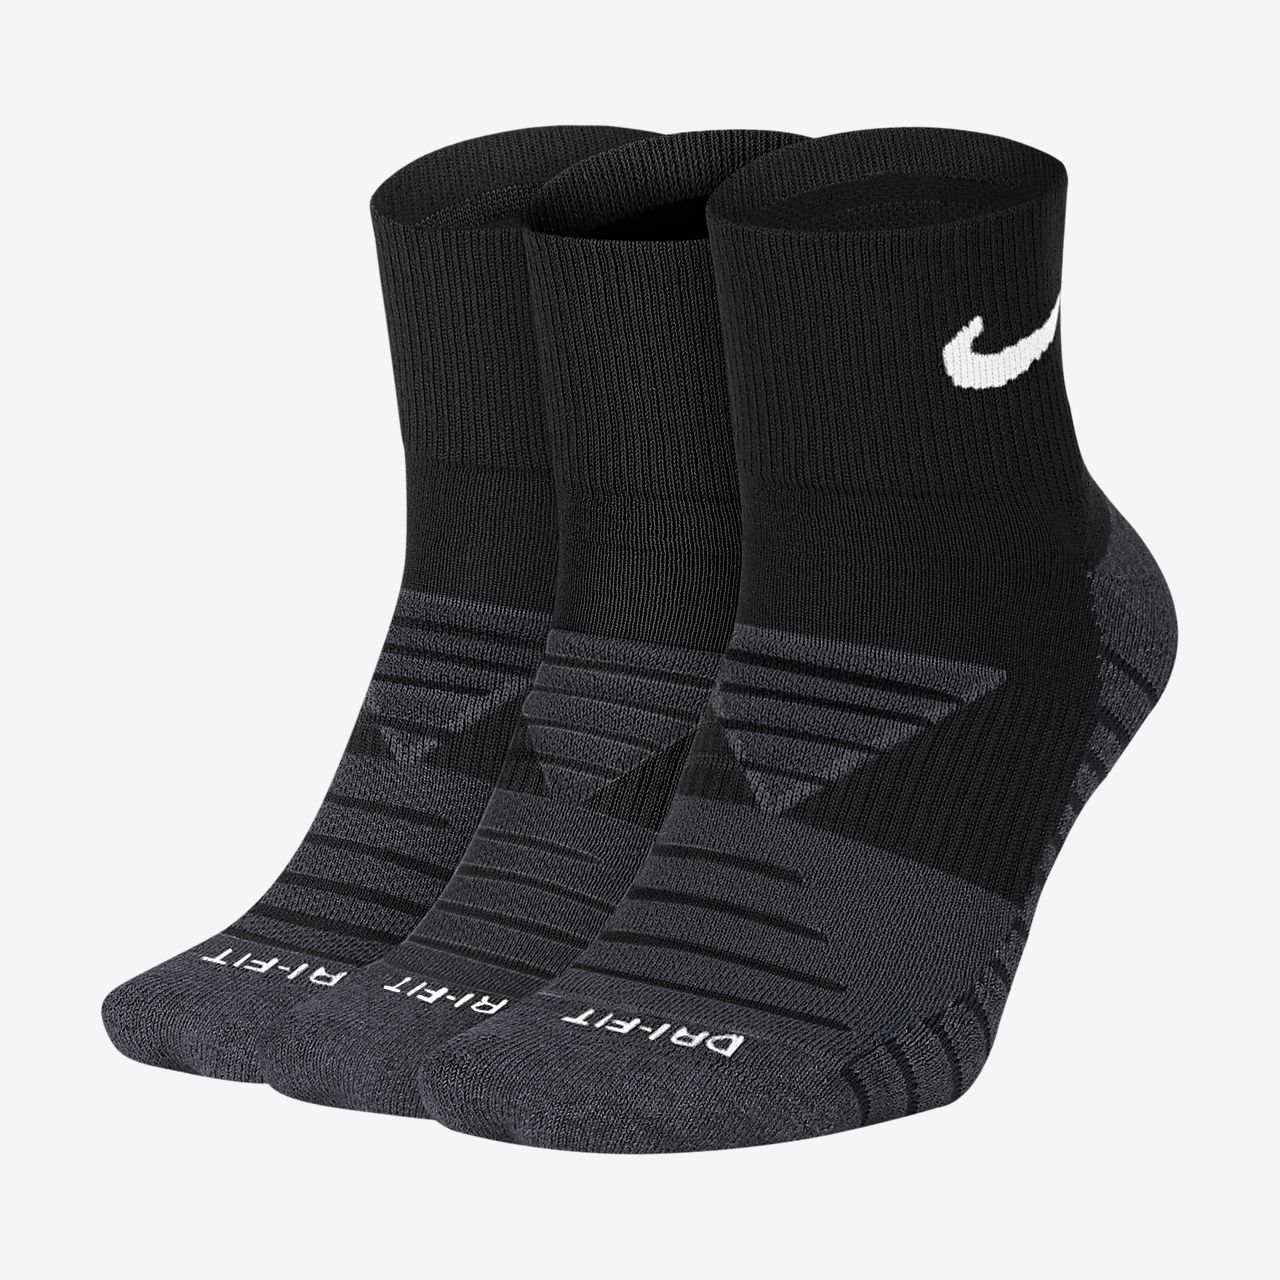 Nike Nba Socks Size Chart